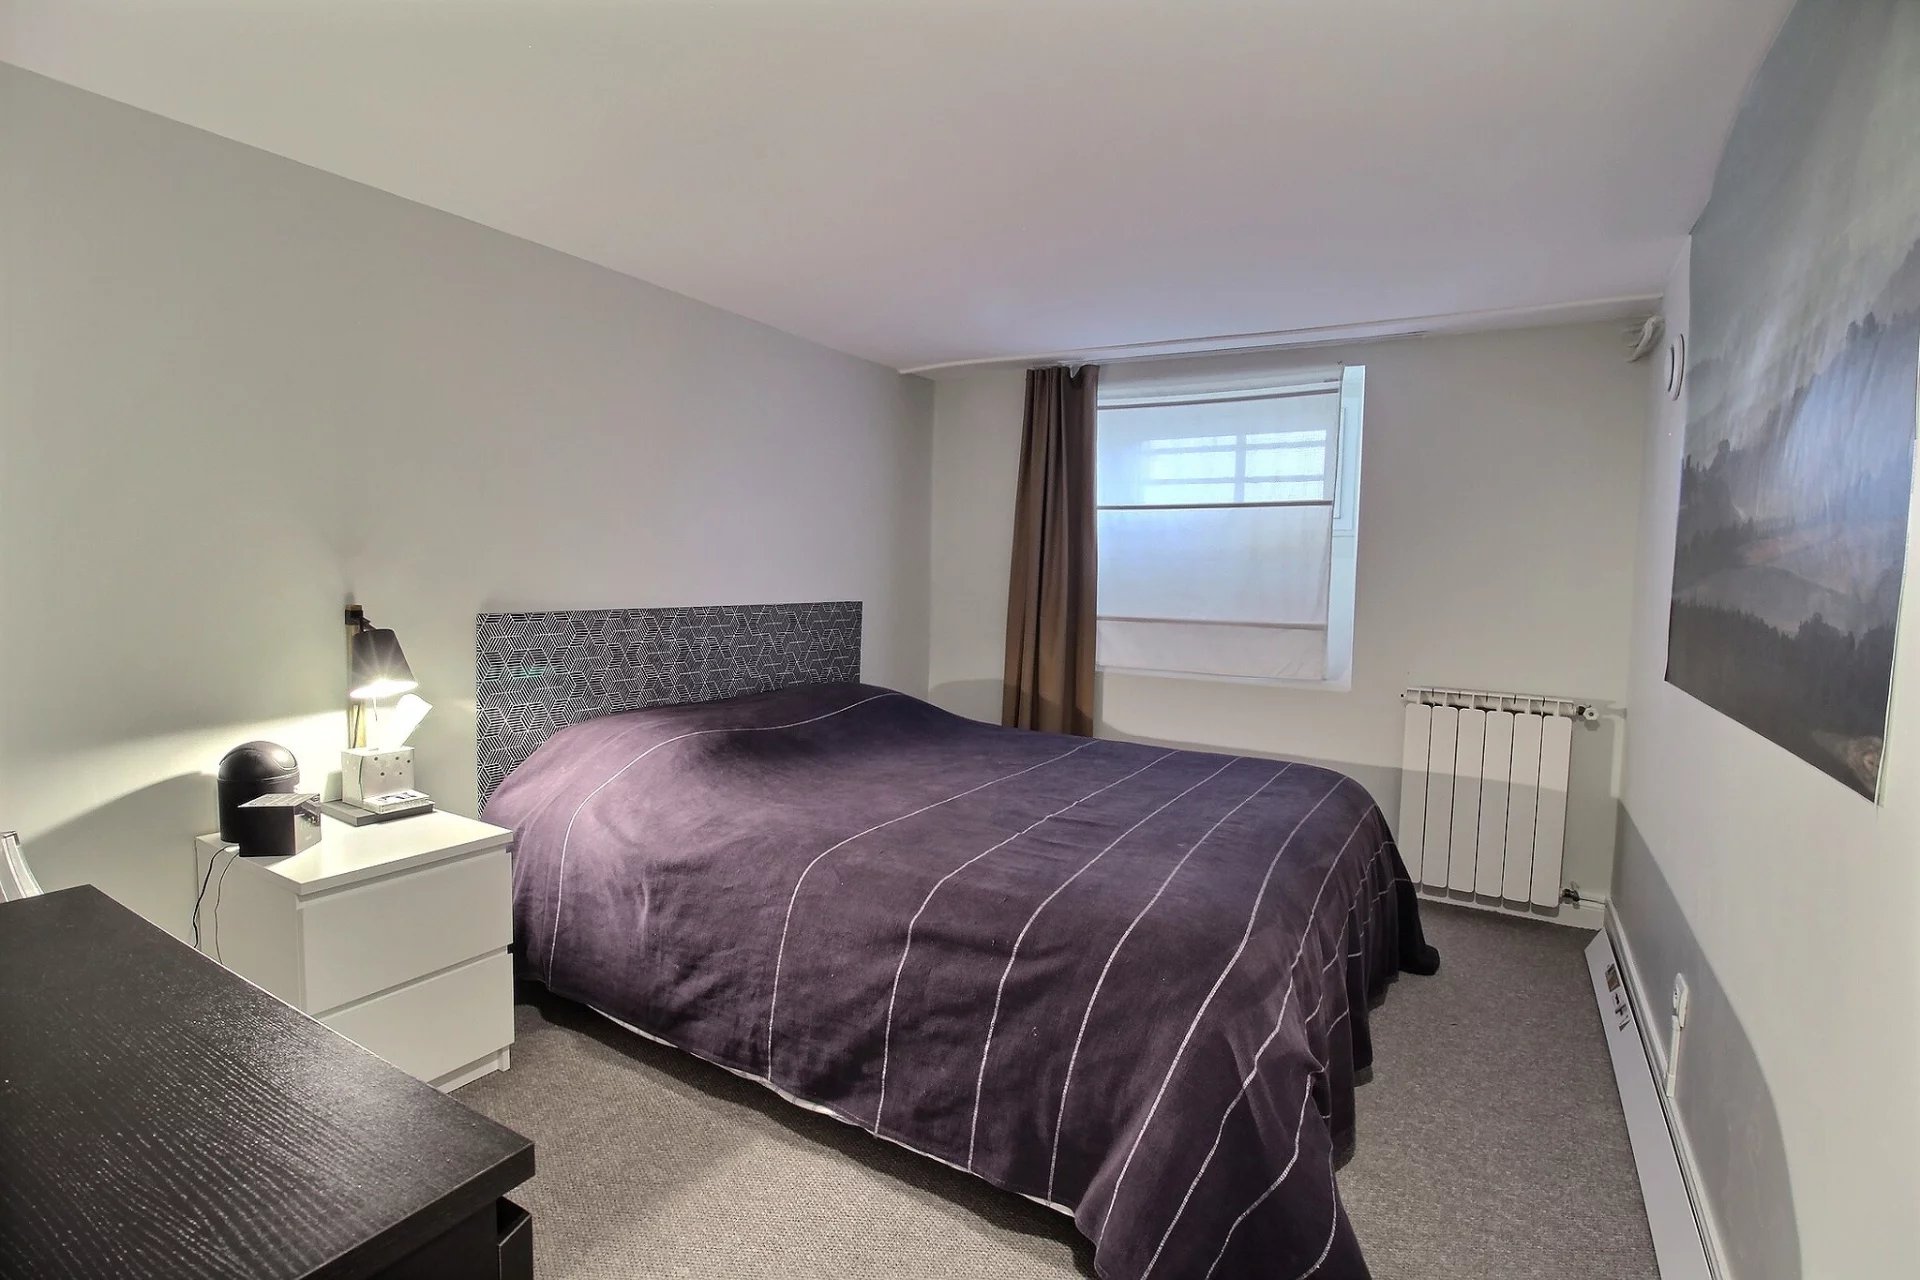 Biarritz, Aquitaine, 64200, FR, 4 Bedrooms Bedrooms, ,3 BathroomsBathrooms,Residential,For Sale,1451114